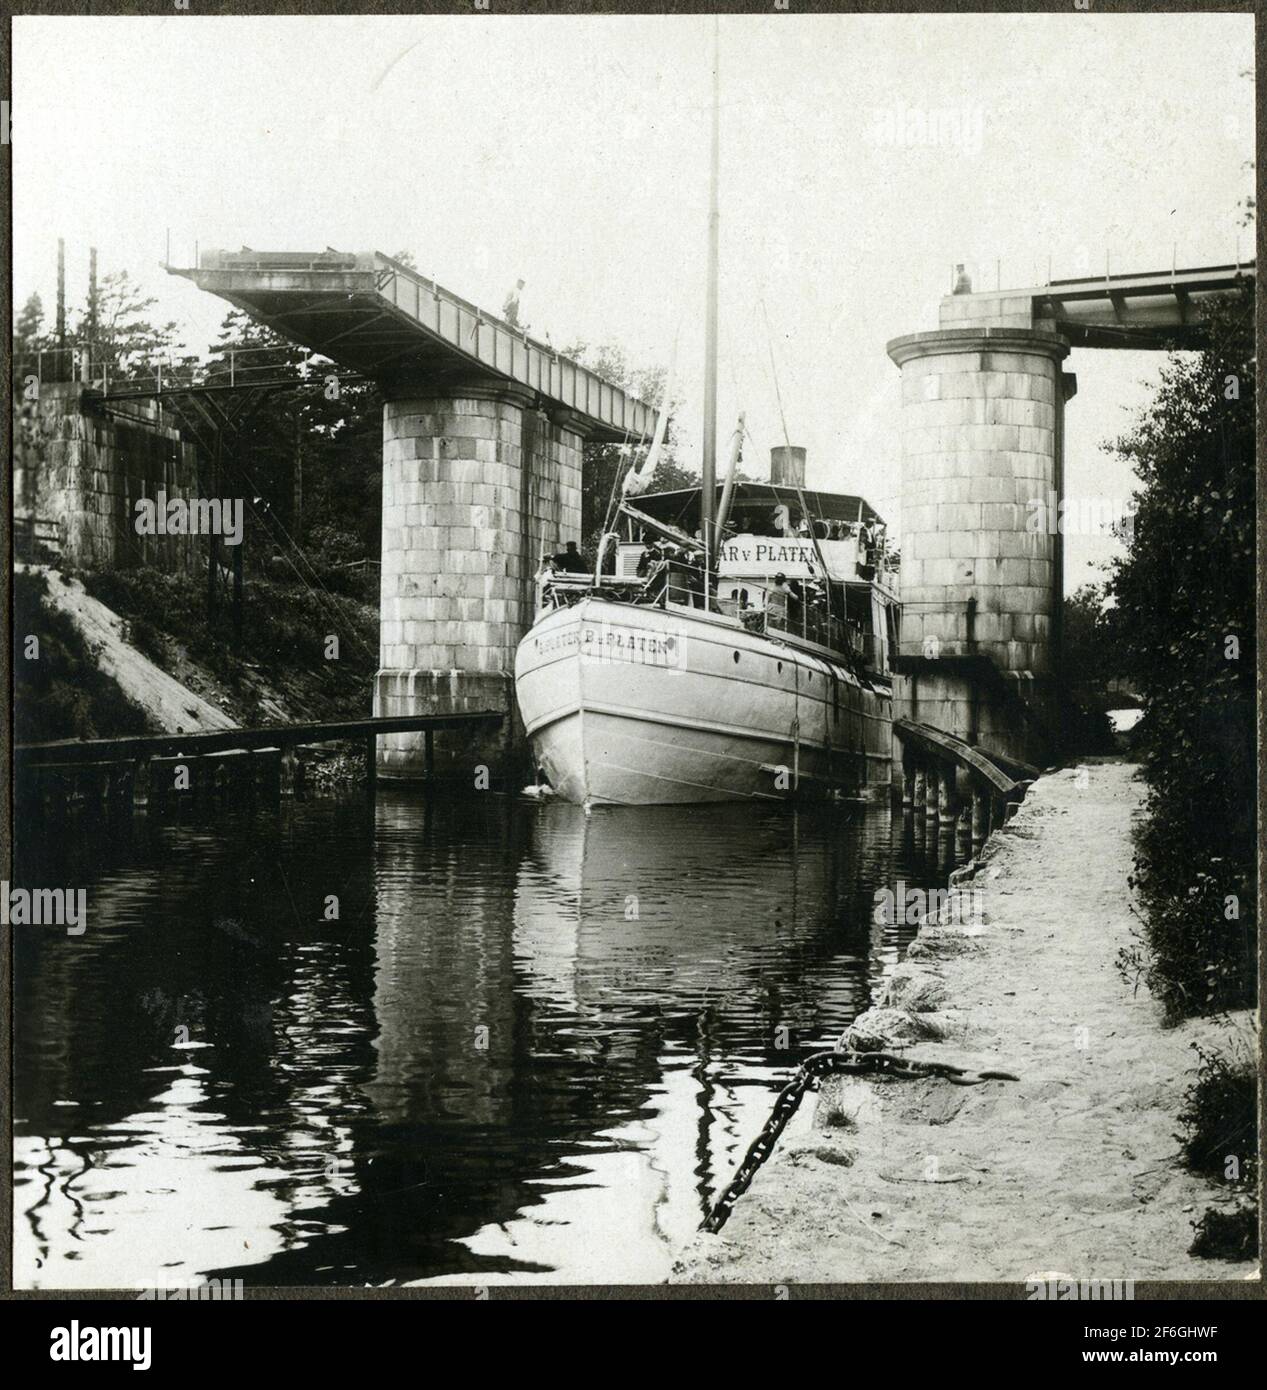 Steamboat B.u.platen war ein kombiniertes Passagier- und Frachtschiff. Erbaut 1871 und erhielt den Namen nach dem Göta Kanal Schöpfer Baltzar von Platen. Stockfoto